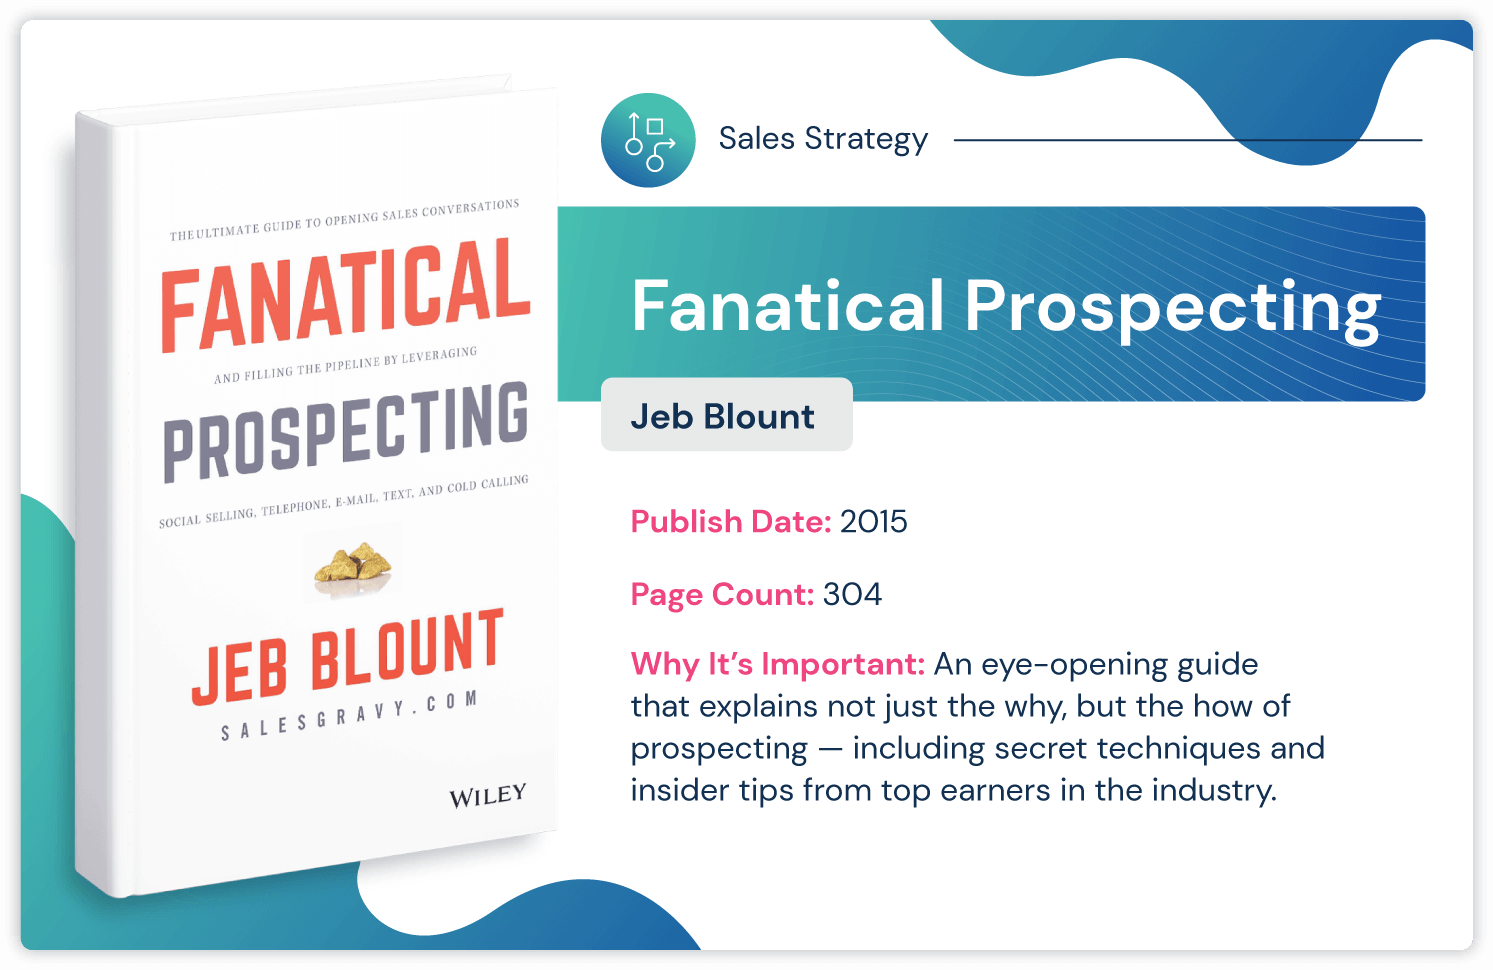 Buku strategi penjualan "Fanatical Prospecting" oleh Jeb Blount tentang tips mencari orang dalam yang diterbitkan pada tahun 2015 dan 304 halaman